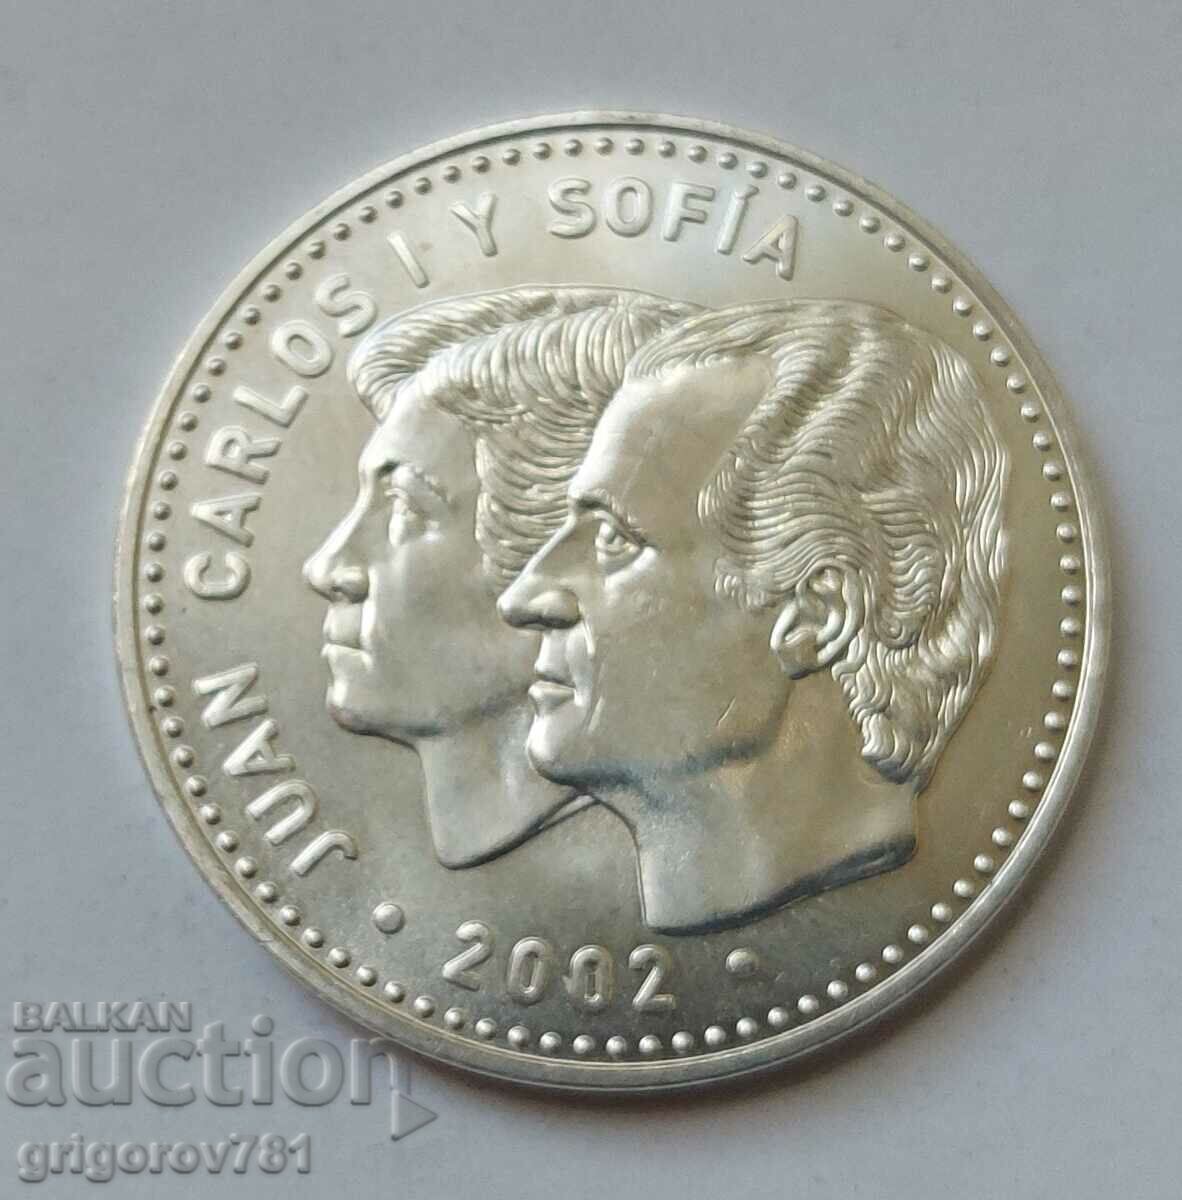 12 Euro Silver Spain 2002 - Silver Coin #3